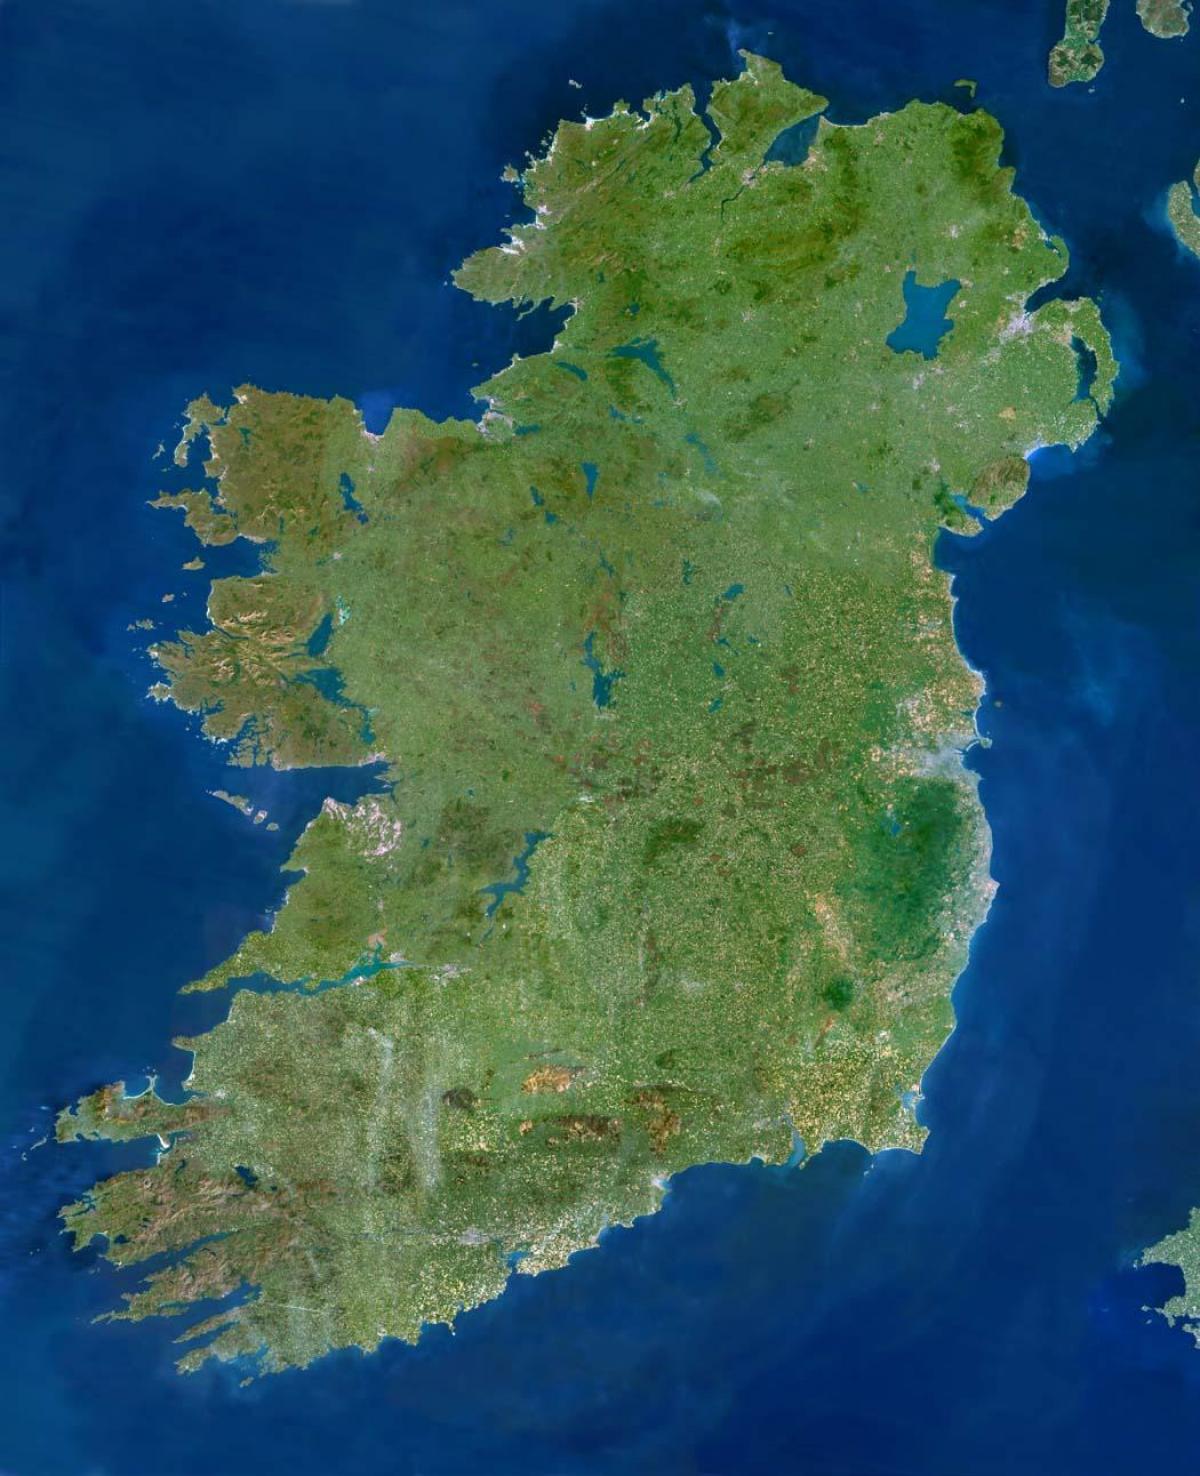 irlandia mapa satelitarna Satelitarna Mapa Irlandii Mapa Mapie Satelitarnej Irlandii Europa Polnocna Europa irlandia mapa satelitarna